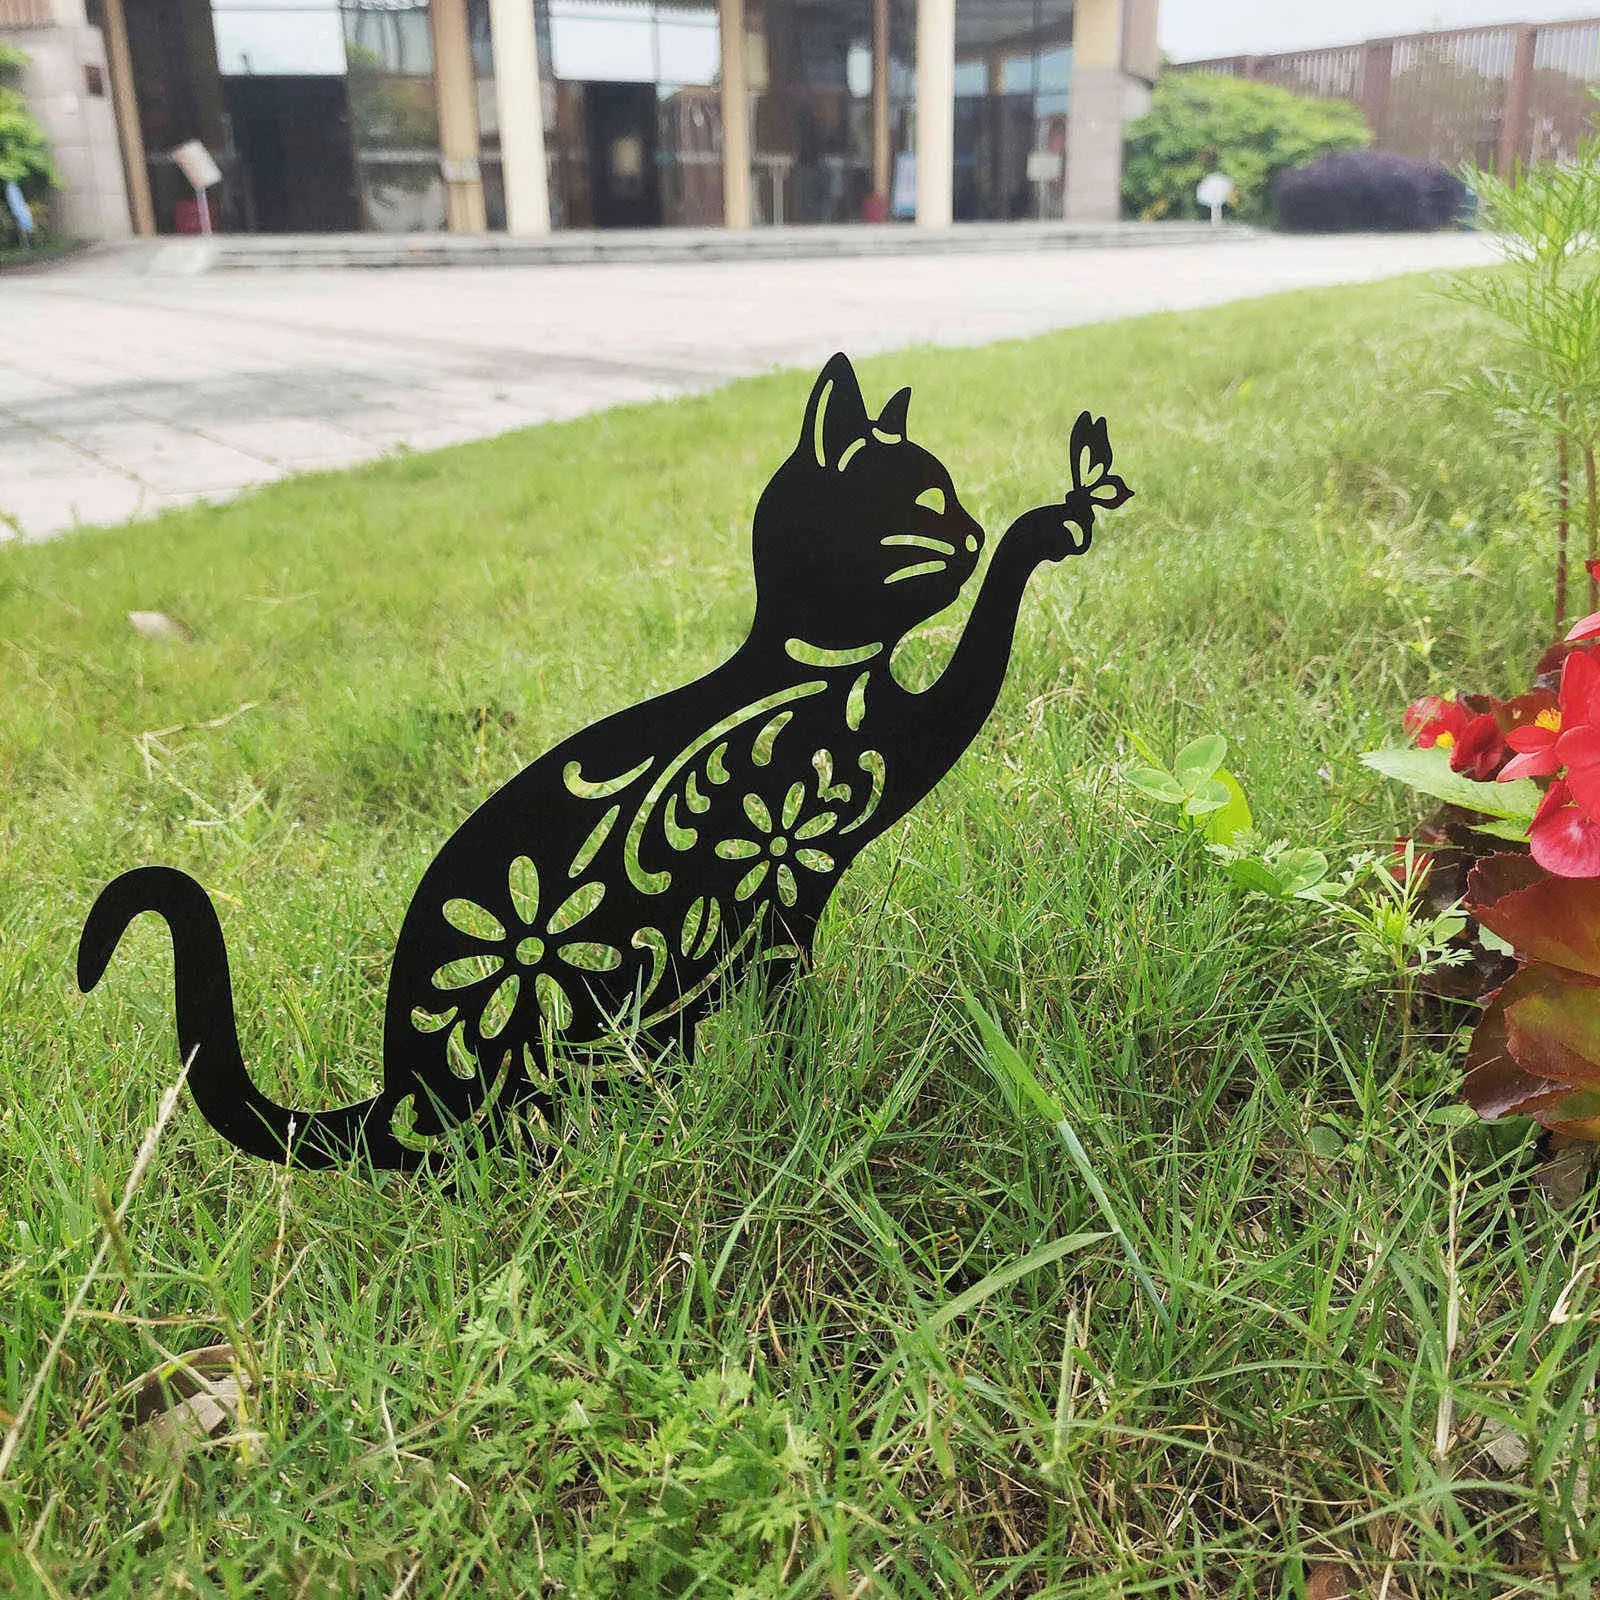 Katze und Schmetterling Yard Art Metall aushöhlen Katze Ornamente Garten Dekoration Outdoor Schmiedeeisen Katze Plug-in Hinterhof Dekoration Q0811